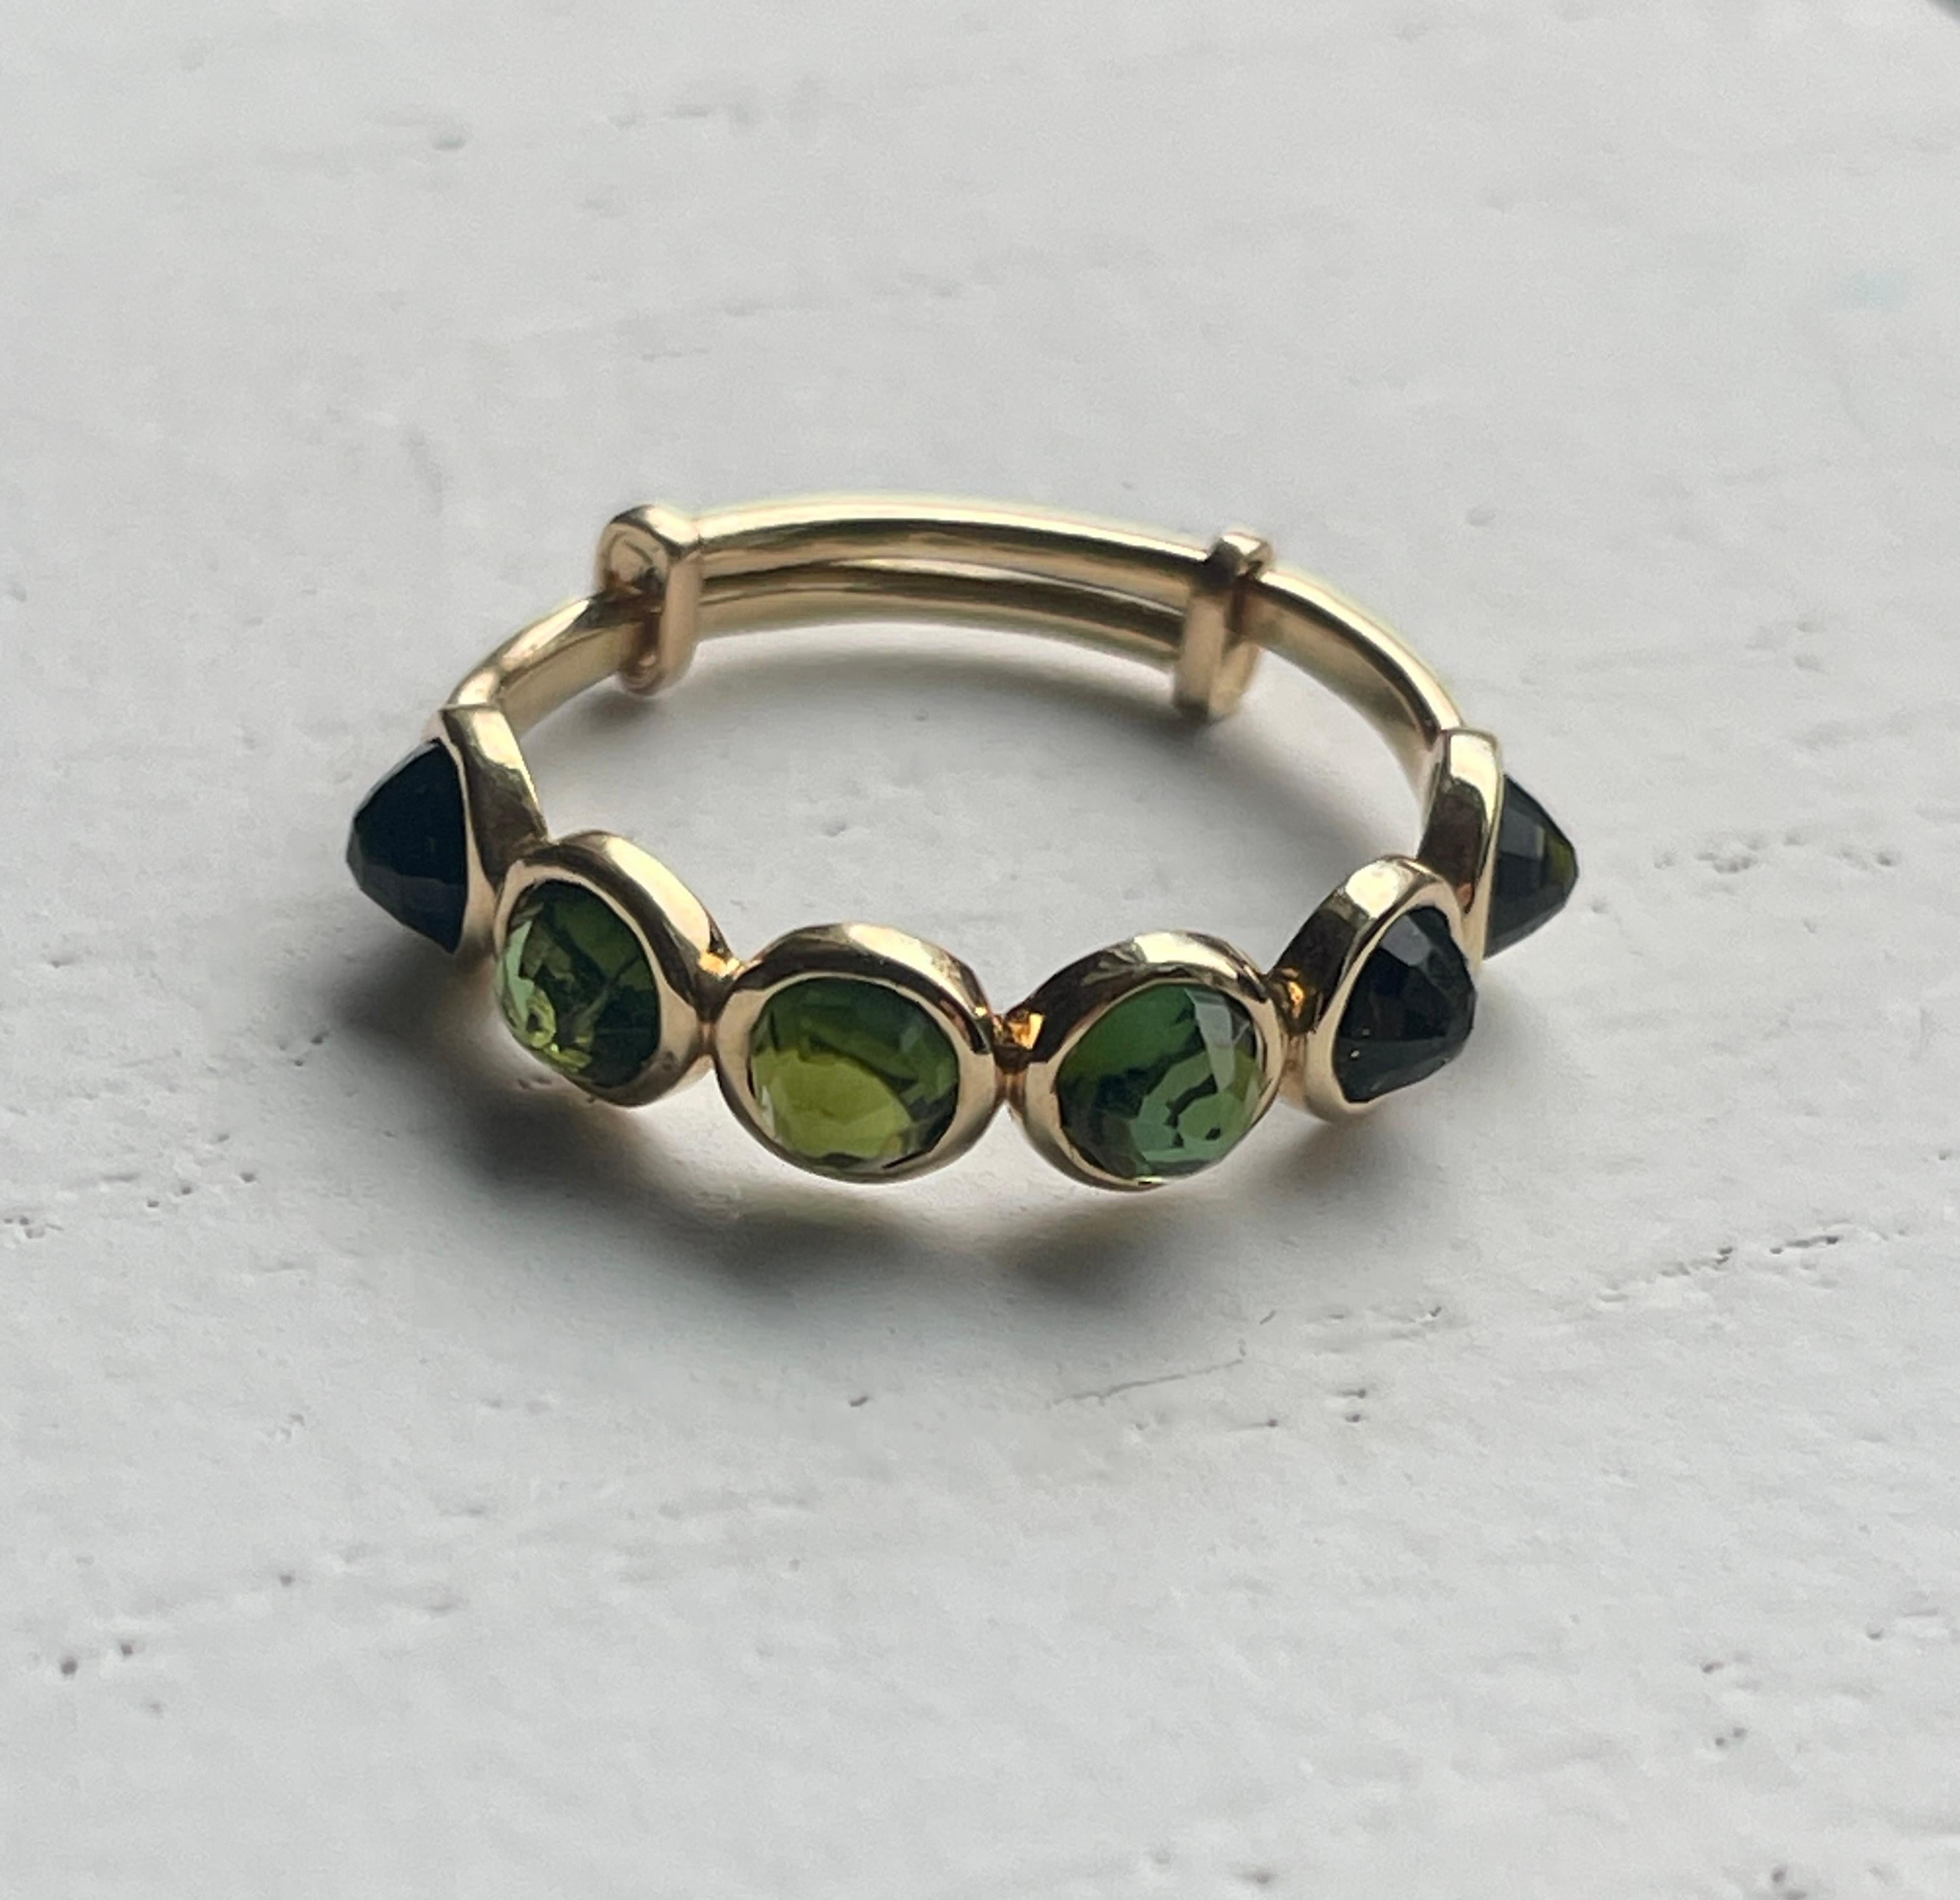 Dieser Ring besteht aus 6 runden, schachbrettartig geschliffenen, jägergrünen Turmalin-Edelsteinen. Die Steine sind in einer 18-karätigen Goldfassung gefasst und stehen auf dem Kopf, so dass die Spitze des Steins oben auf dem Ring sitzt und ein